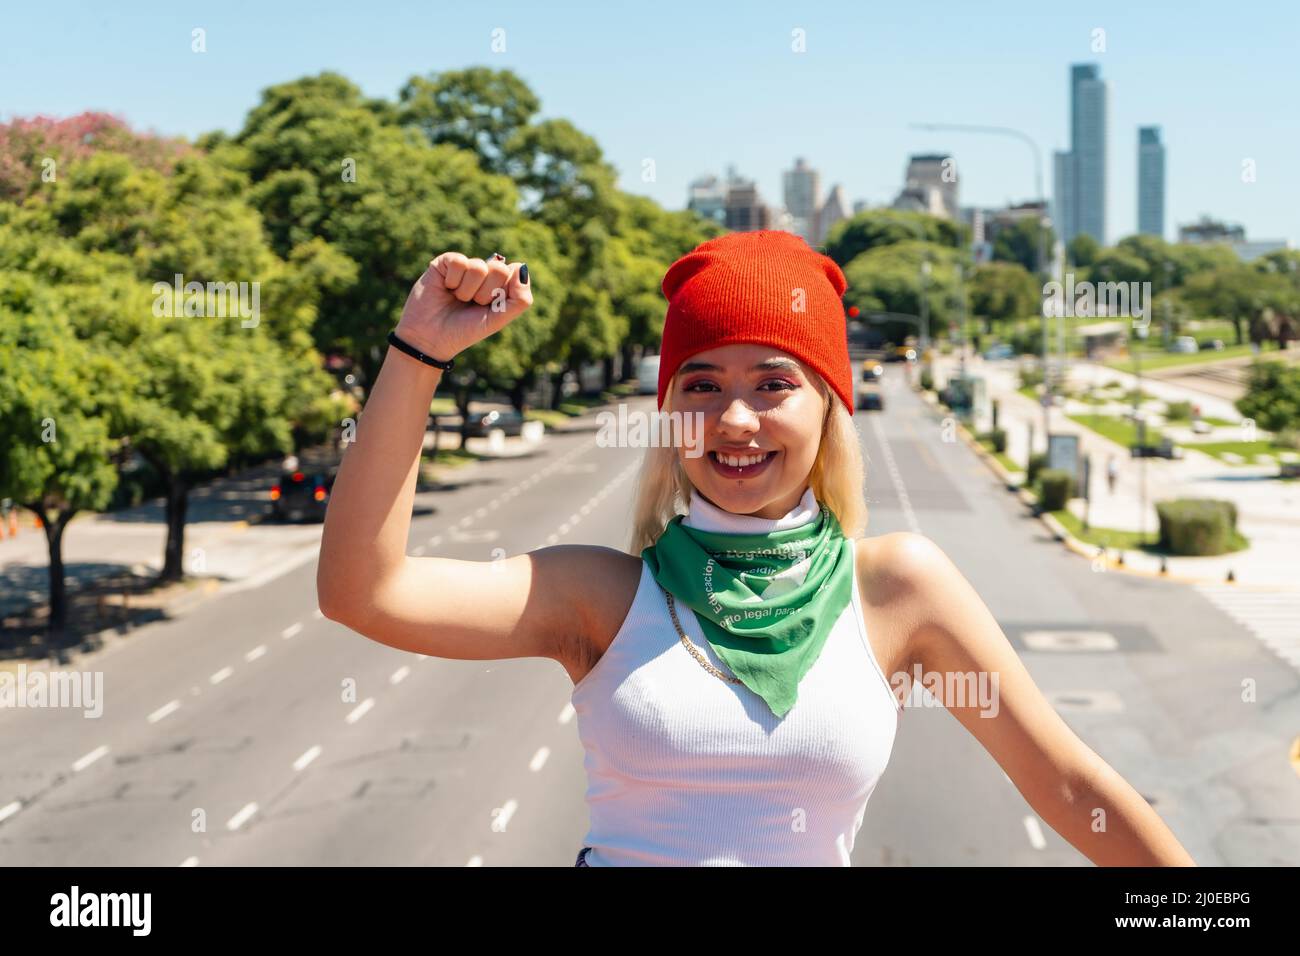 Bella giovane donna con il suo pugno sollevato con una sciarpa verde che simboleggia la lotta femminista per l'uguaglianza e l'aborto legale in America Latina. Concetto Foto Stock